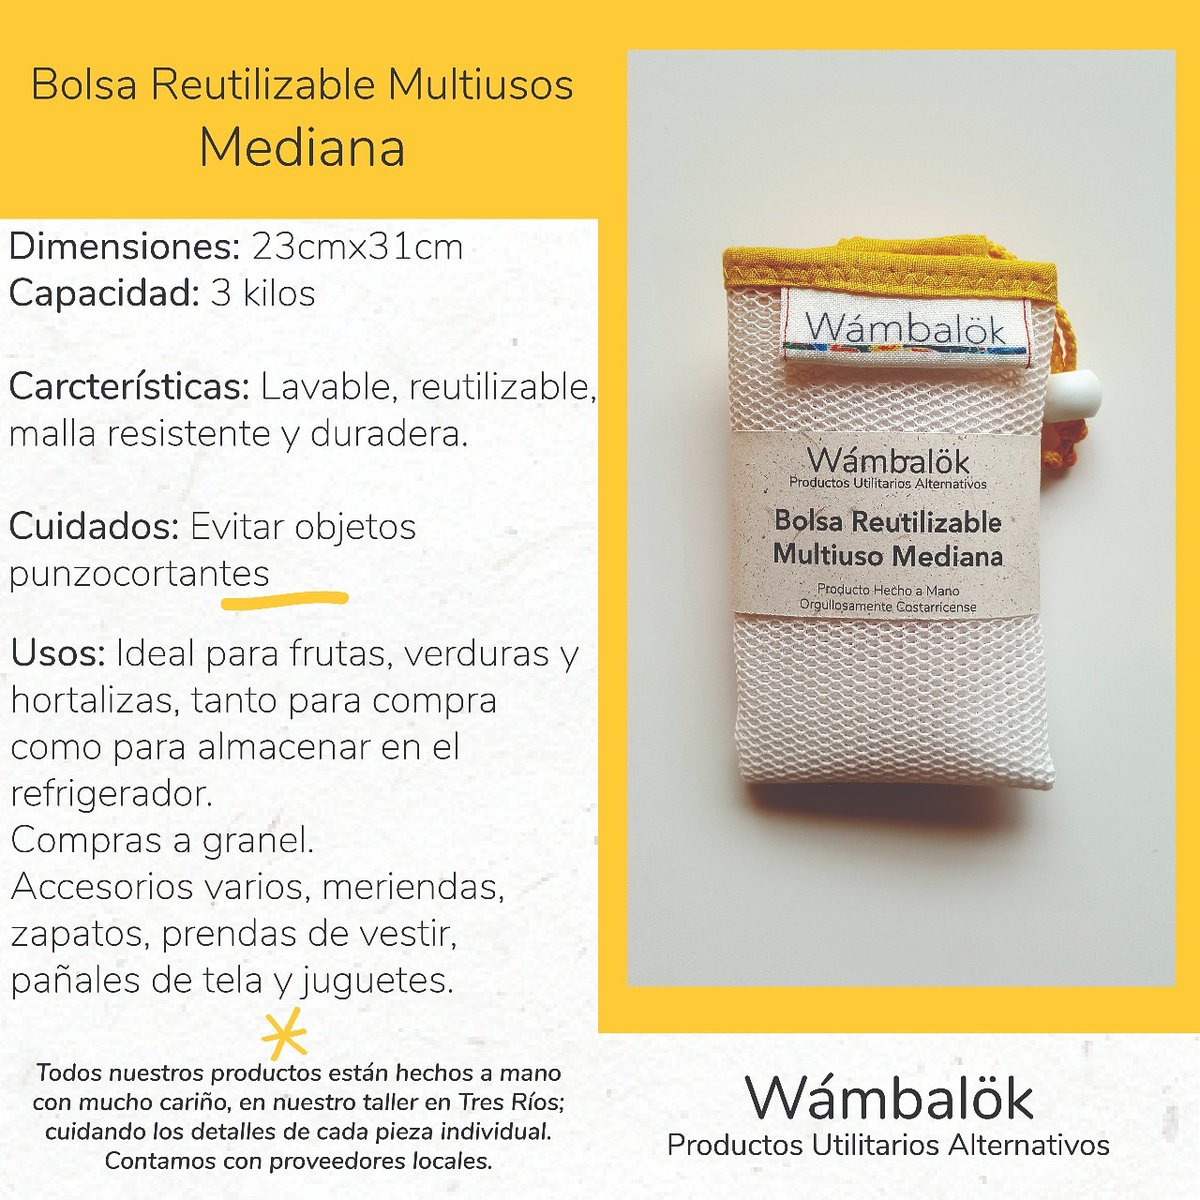 #BolsaReutilizable #Multiusos Mediana

¡Nuestro primer producto #wámbalök! Y nuestro #ProductoEstrella
Disponibles en el #puntodeventa #VivirSinDesperdiciosCR #ElGraneroCR

#hechoamano #hechoencostarica #wámbalök #wambalokreuse